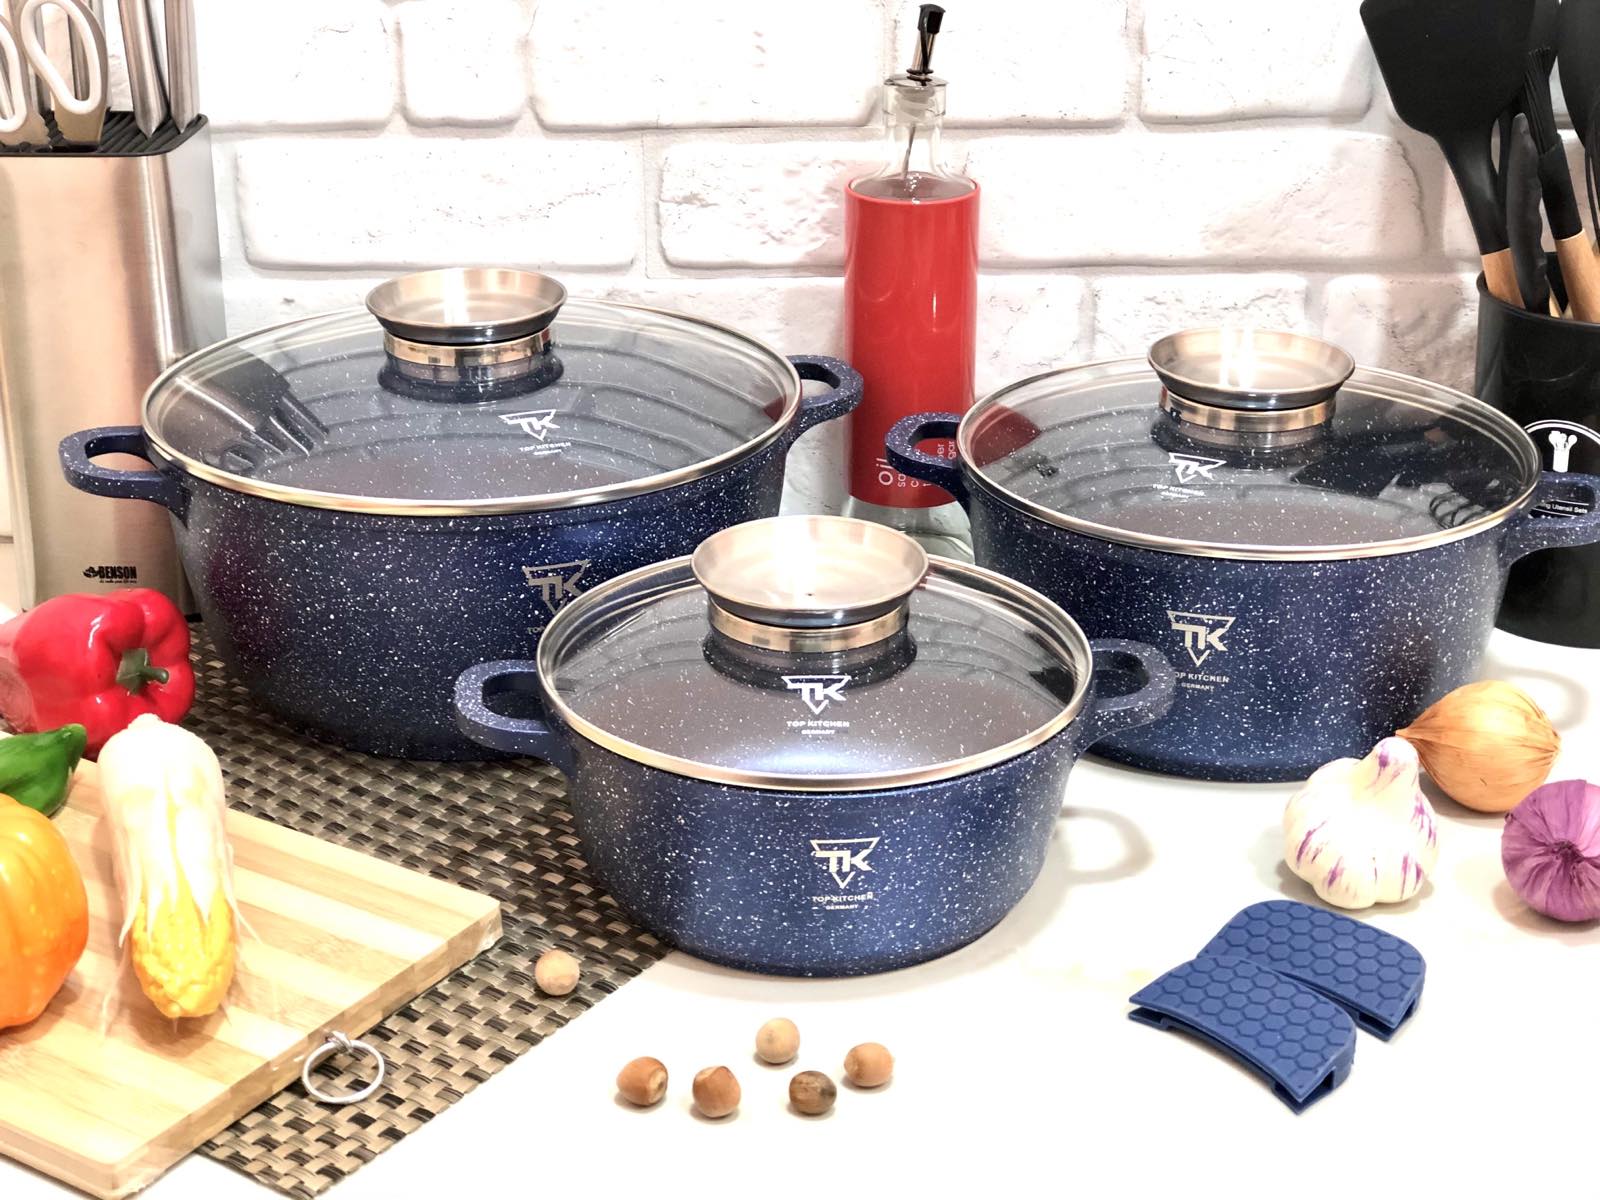 Набор посуды с мраморным покрытием синий Top Kitchen - TK 00021 ✅ базовая цена $47.72 ✔ Опт ✔ Скидки ✔ Заходите! - Интернет-магазин ✅ Фортуна-опт ✅